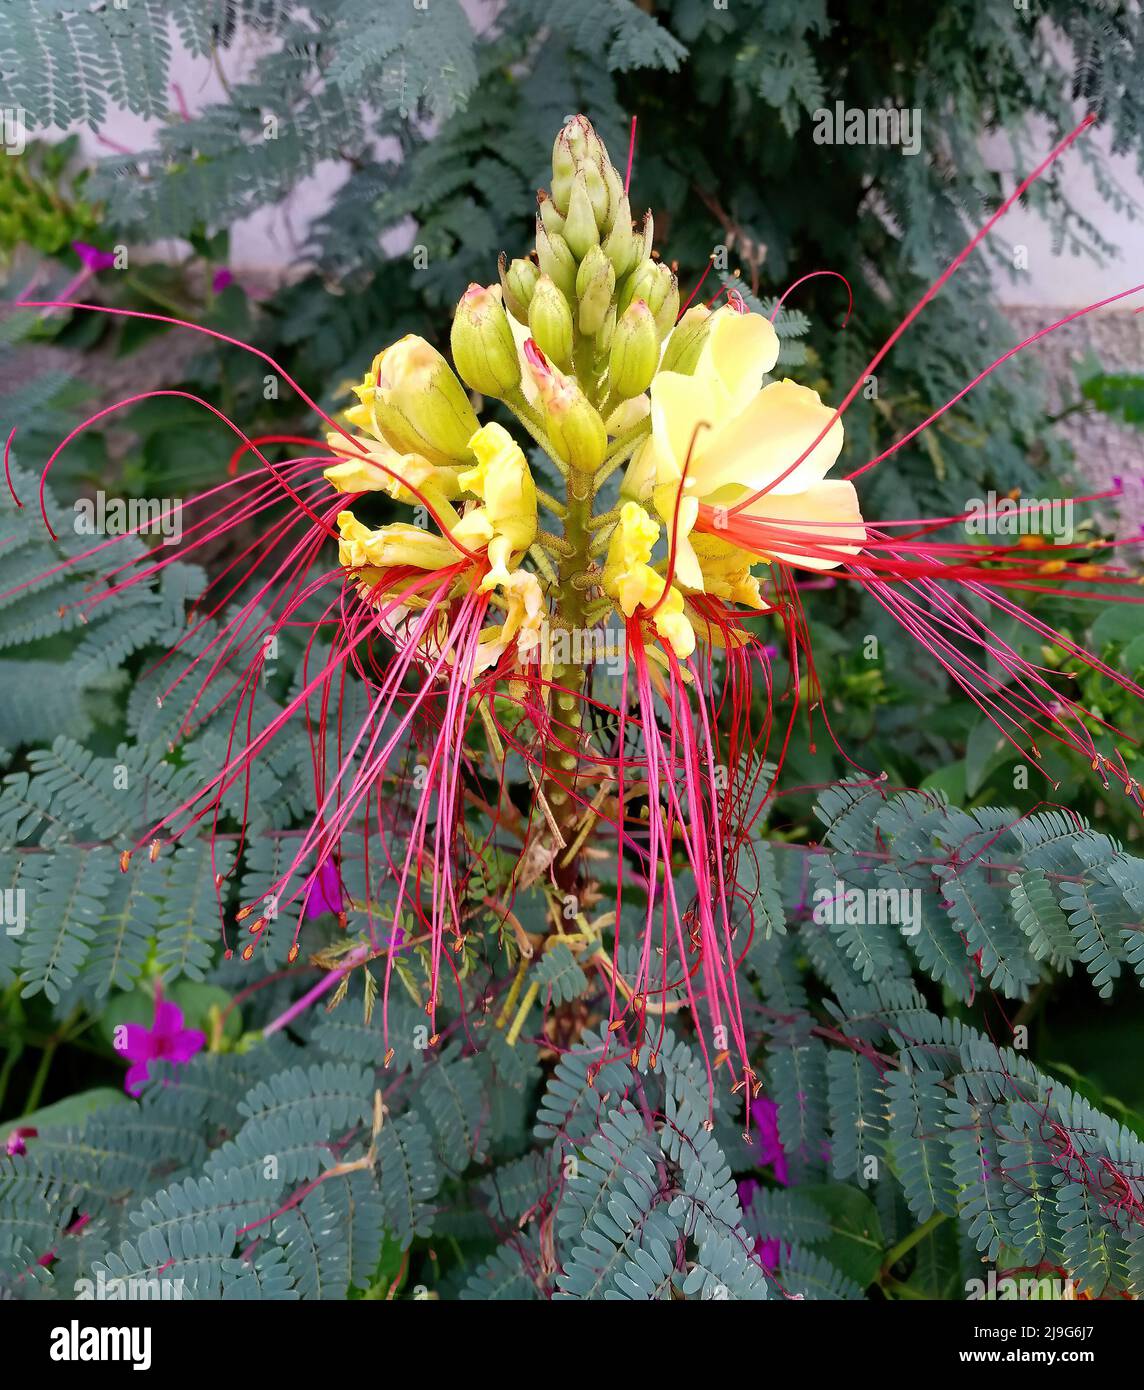 Flor de la planta Caesalpinia gilliesii, también llamado Erythrostemon gilliesii, arbusto ornamental, comúnmente conocido como ave del paraíso Foto de stock